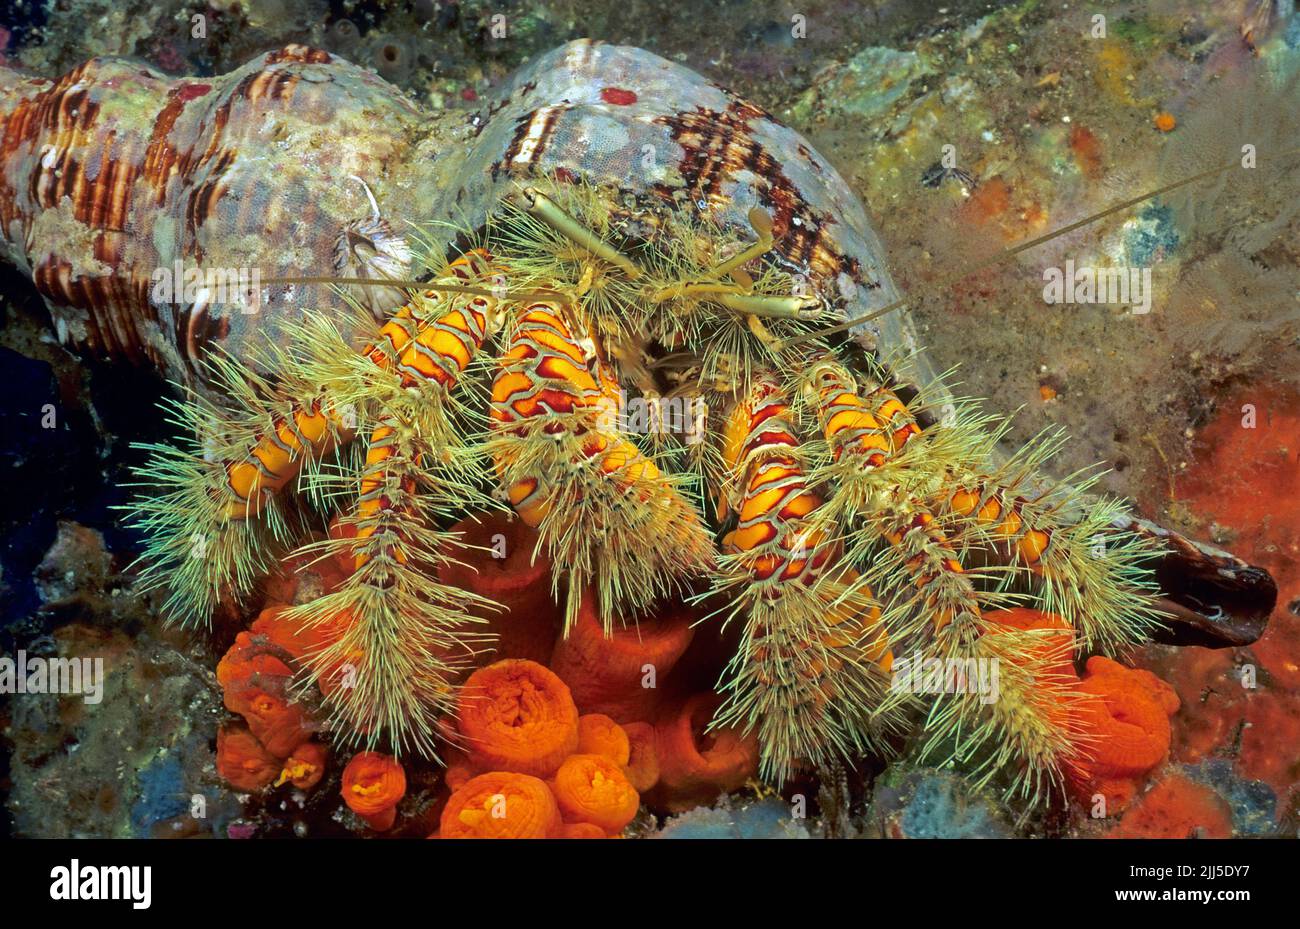 Crabe hermite jaune poilu ou grand crabe hermite poilu (Aniculus maximus) dans un récif de corail, mer d'Andaman, Thaïlande, Asie Banque D'Images